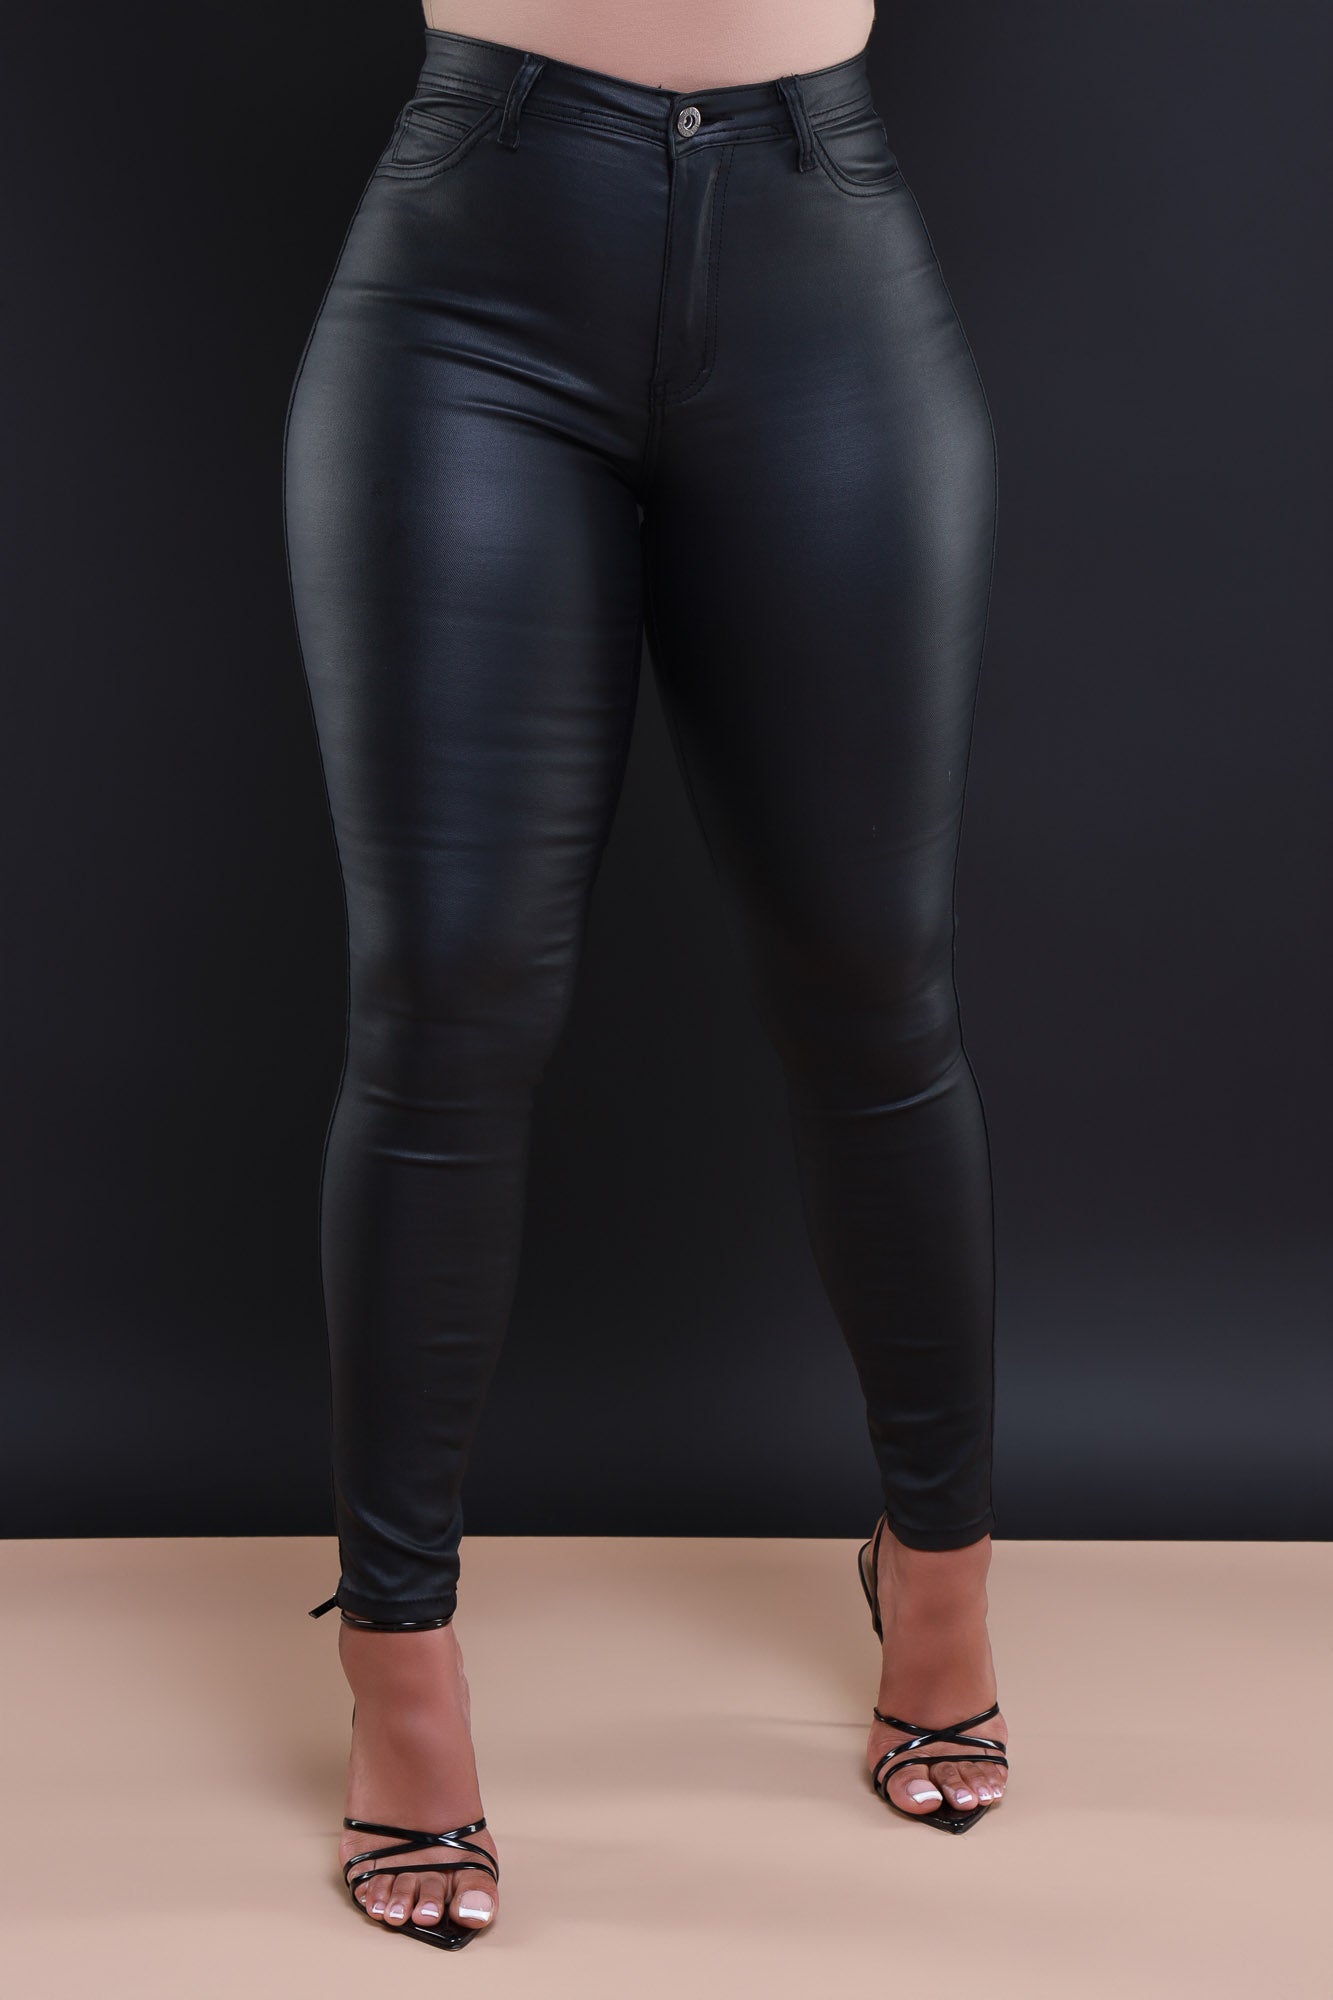 TOPSHOP Faux Leather Pants Leggings Black Womens Size 8 EUC